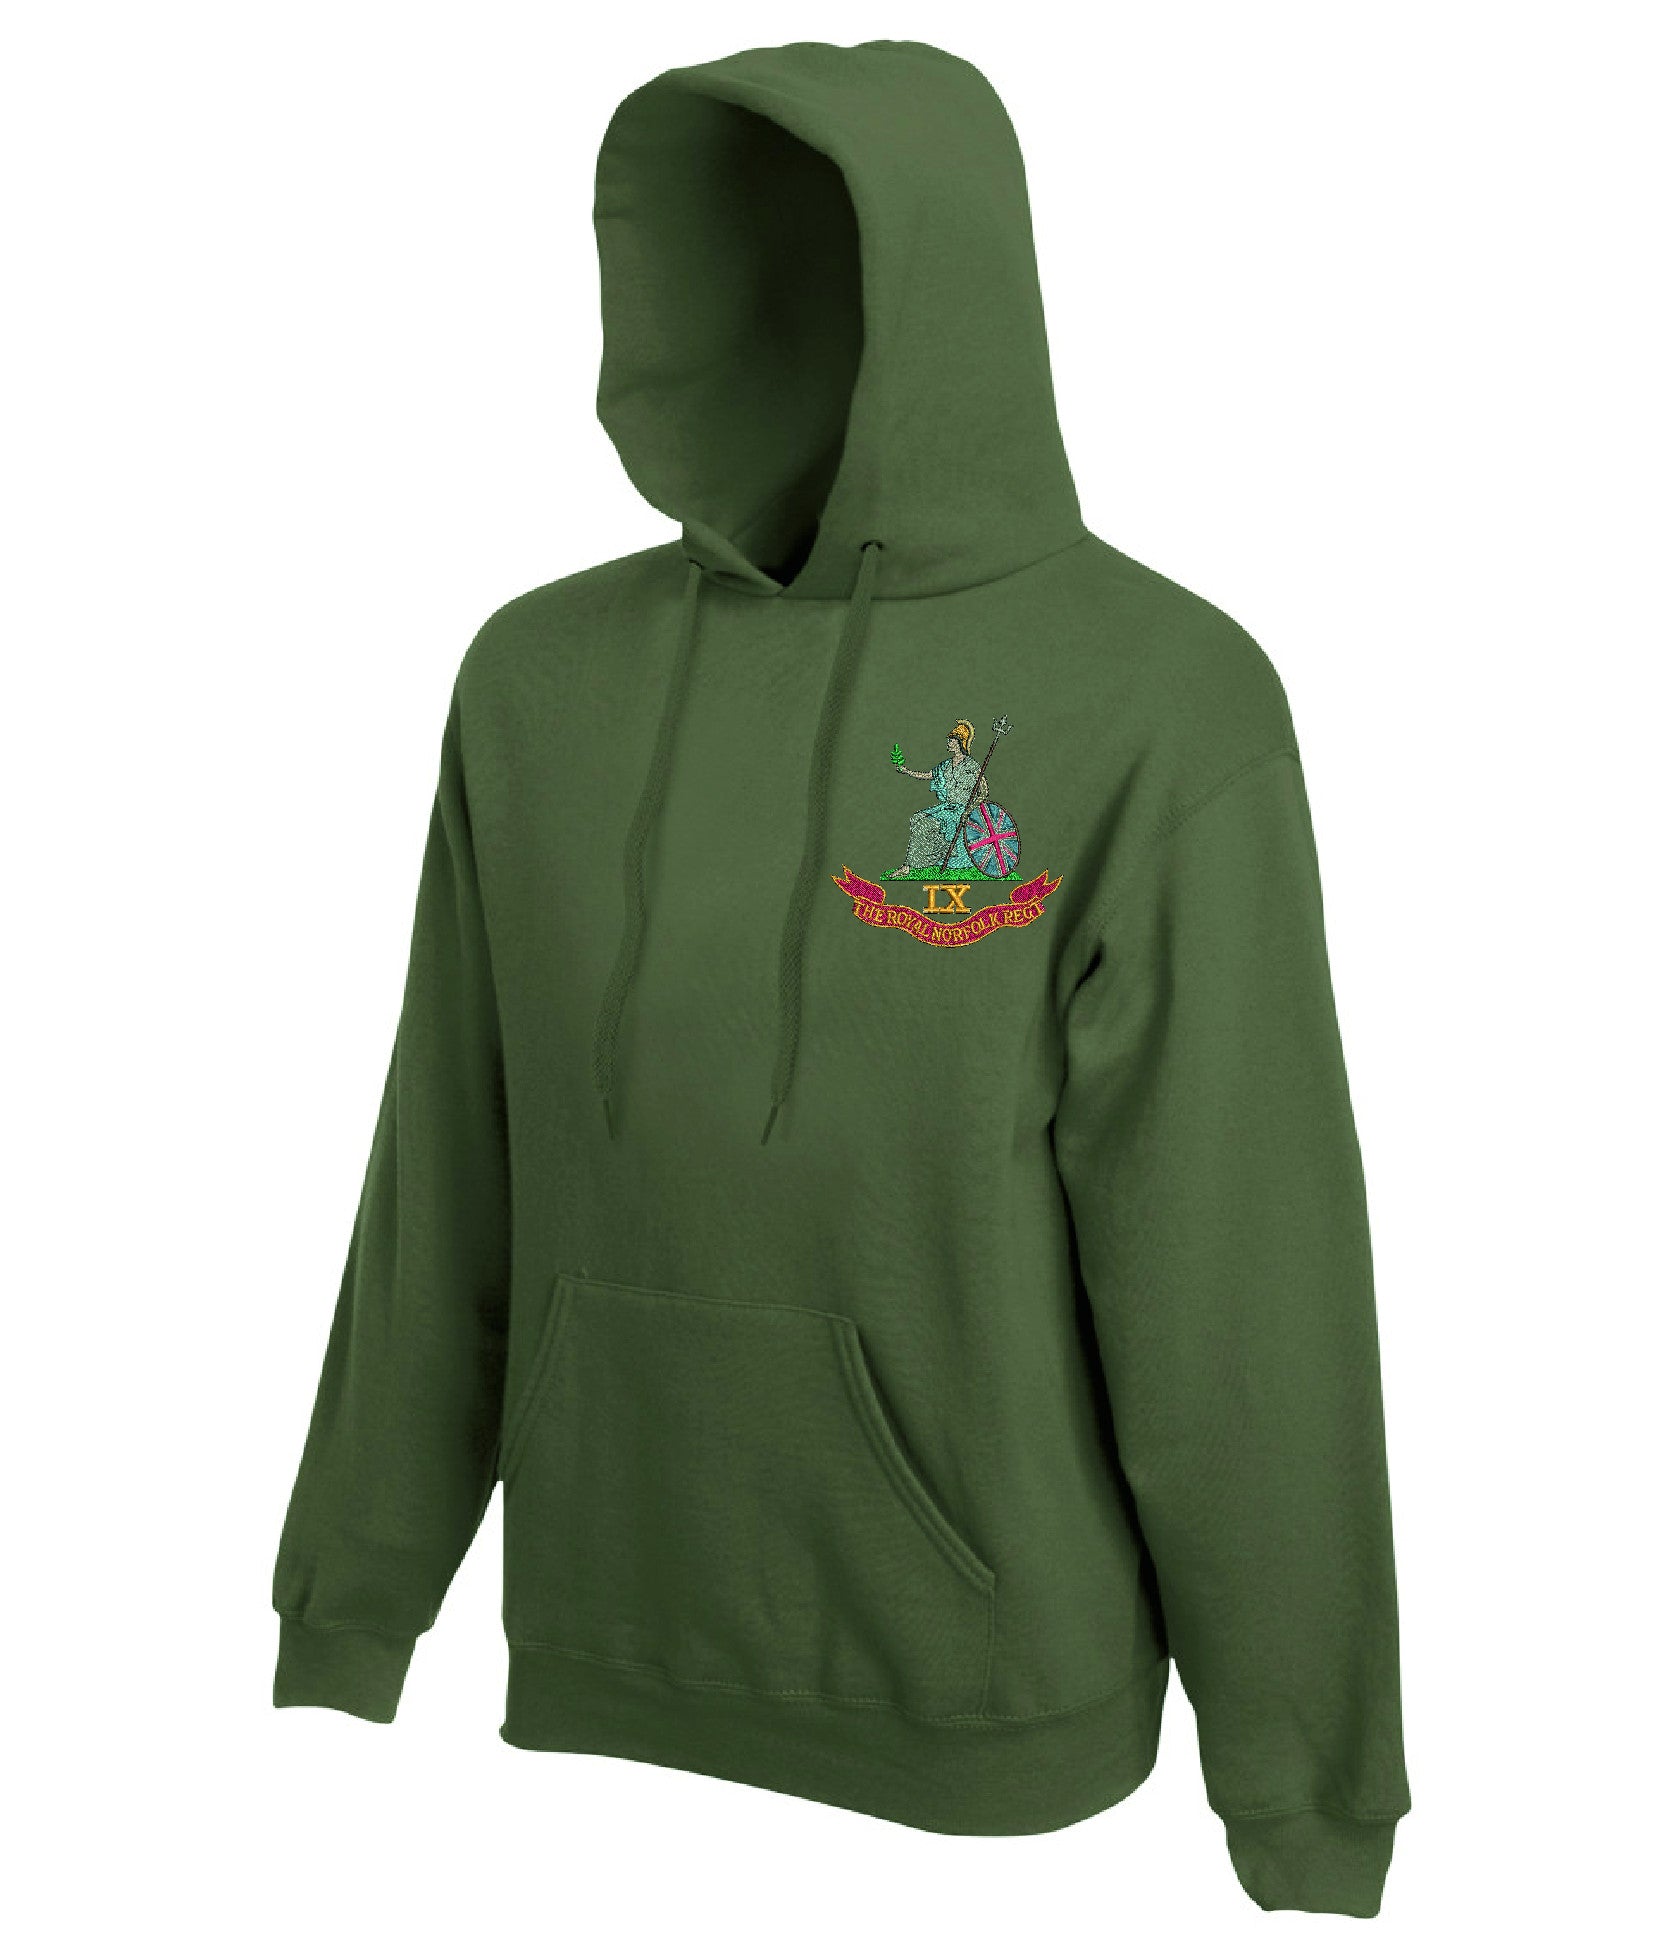 Norfolk Regiment  hoodie